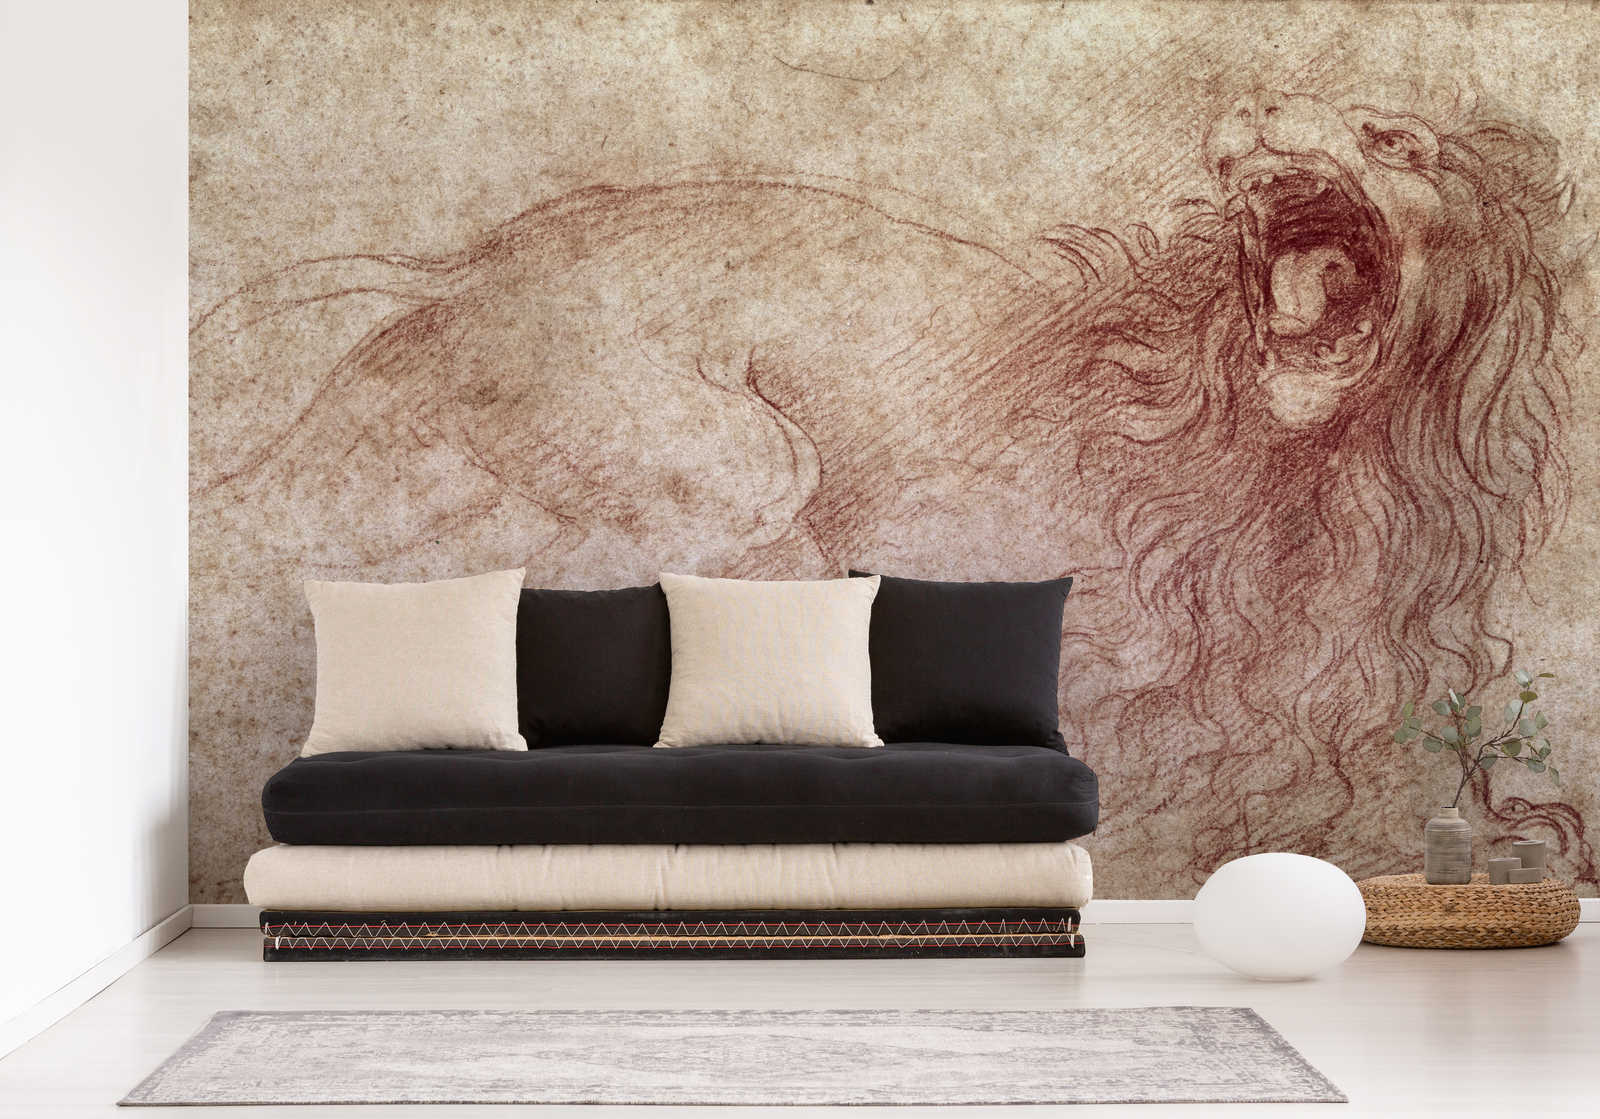             Muurschildering "Schets van een brullende leeuw" door Leonardo da Vinci
        